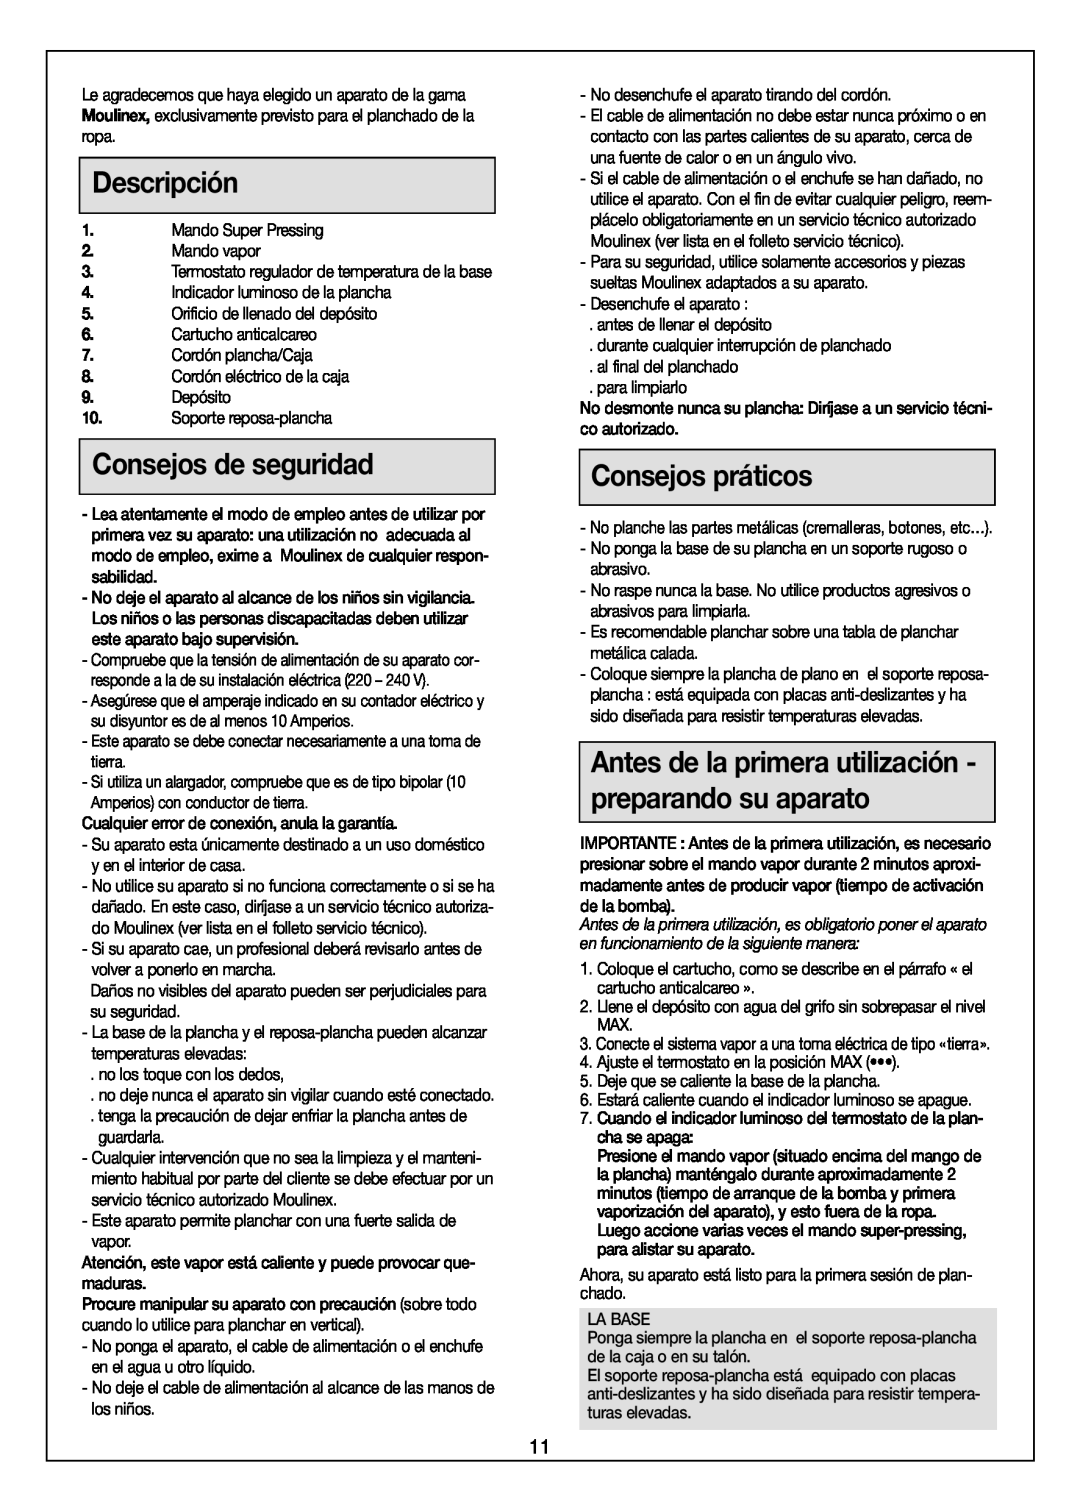 Moulinex Aquaplus IRON manual Descripción, Consejos de seguridad, Consejos práticos 